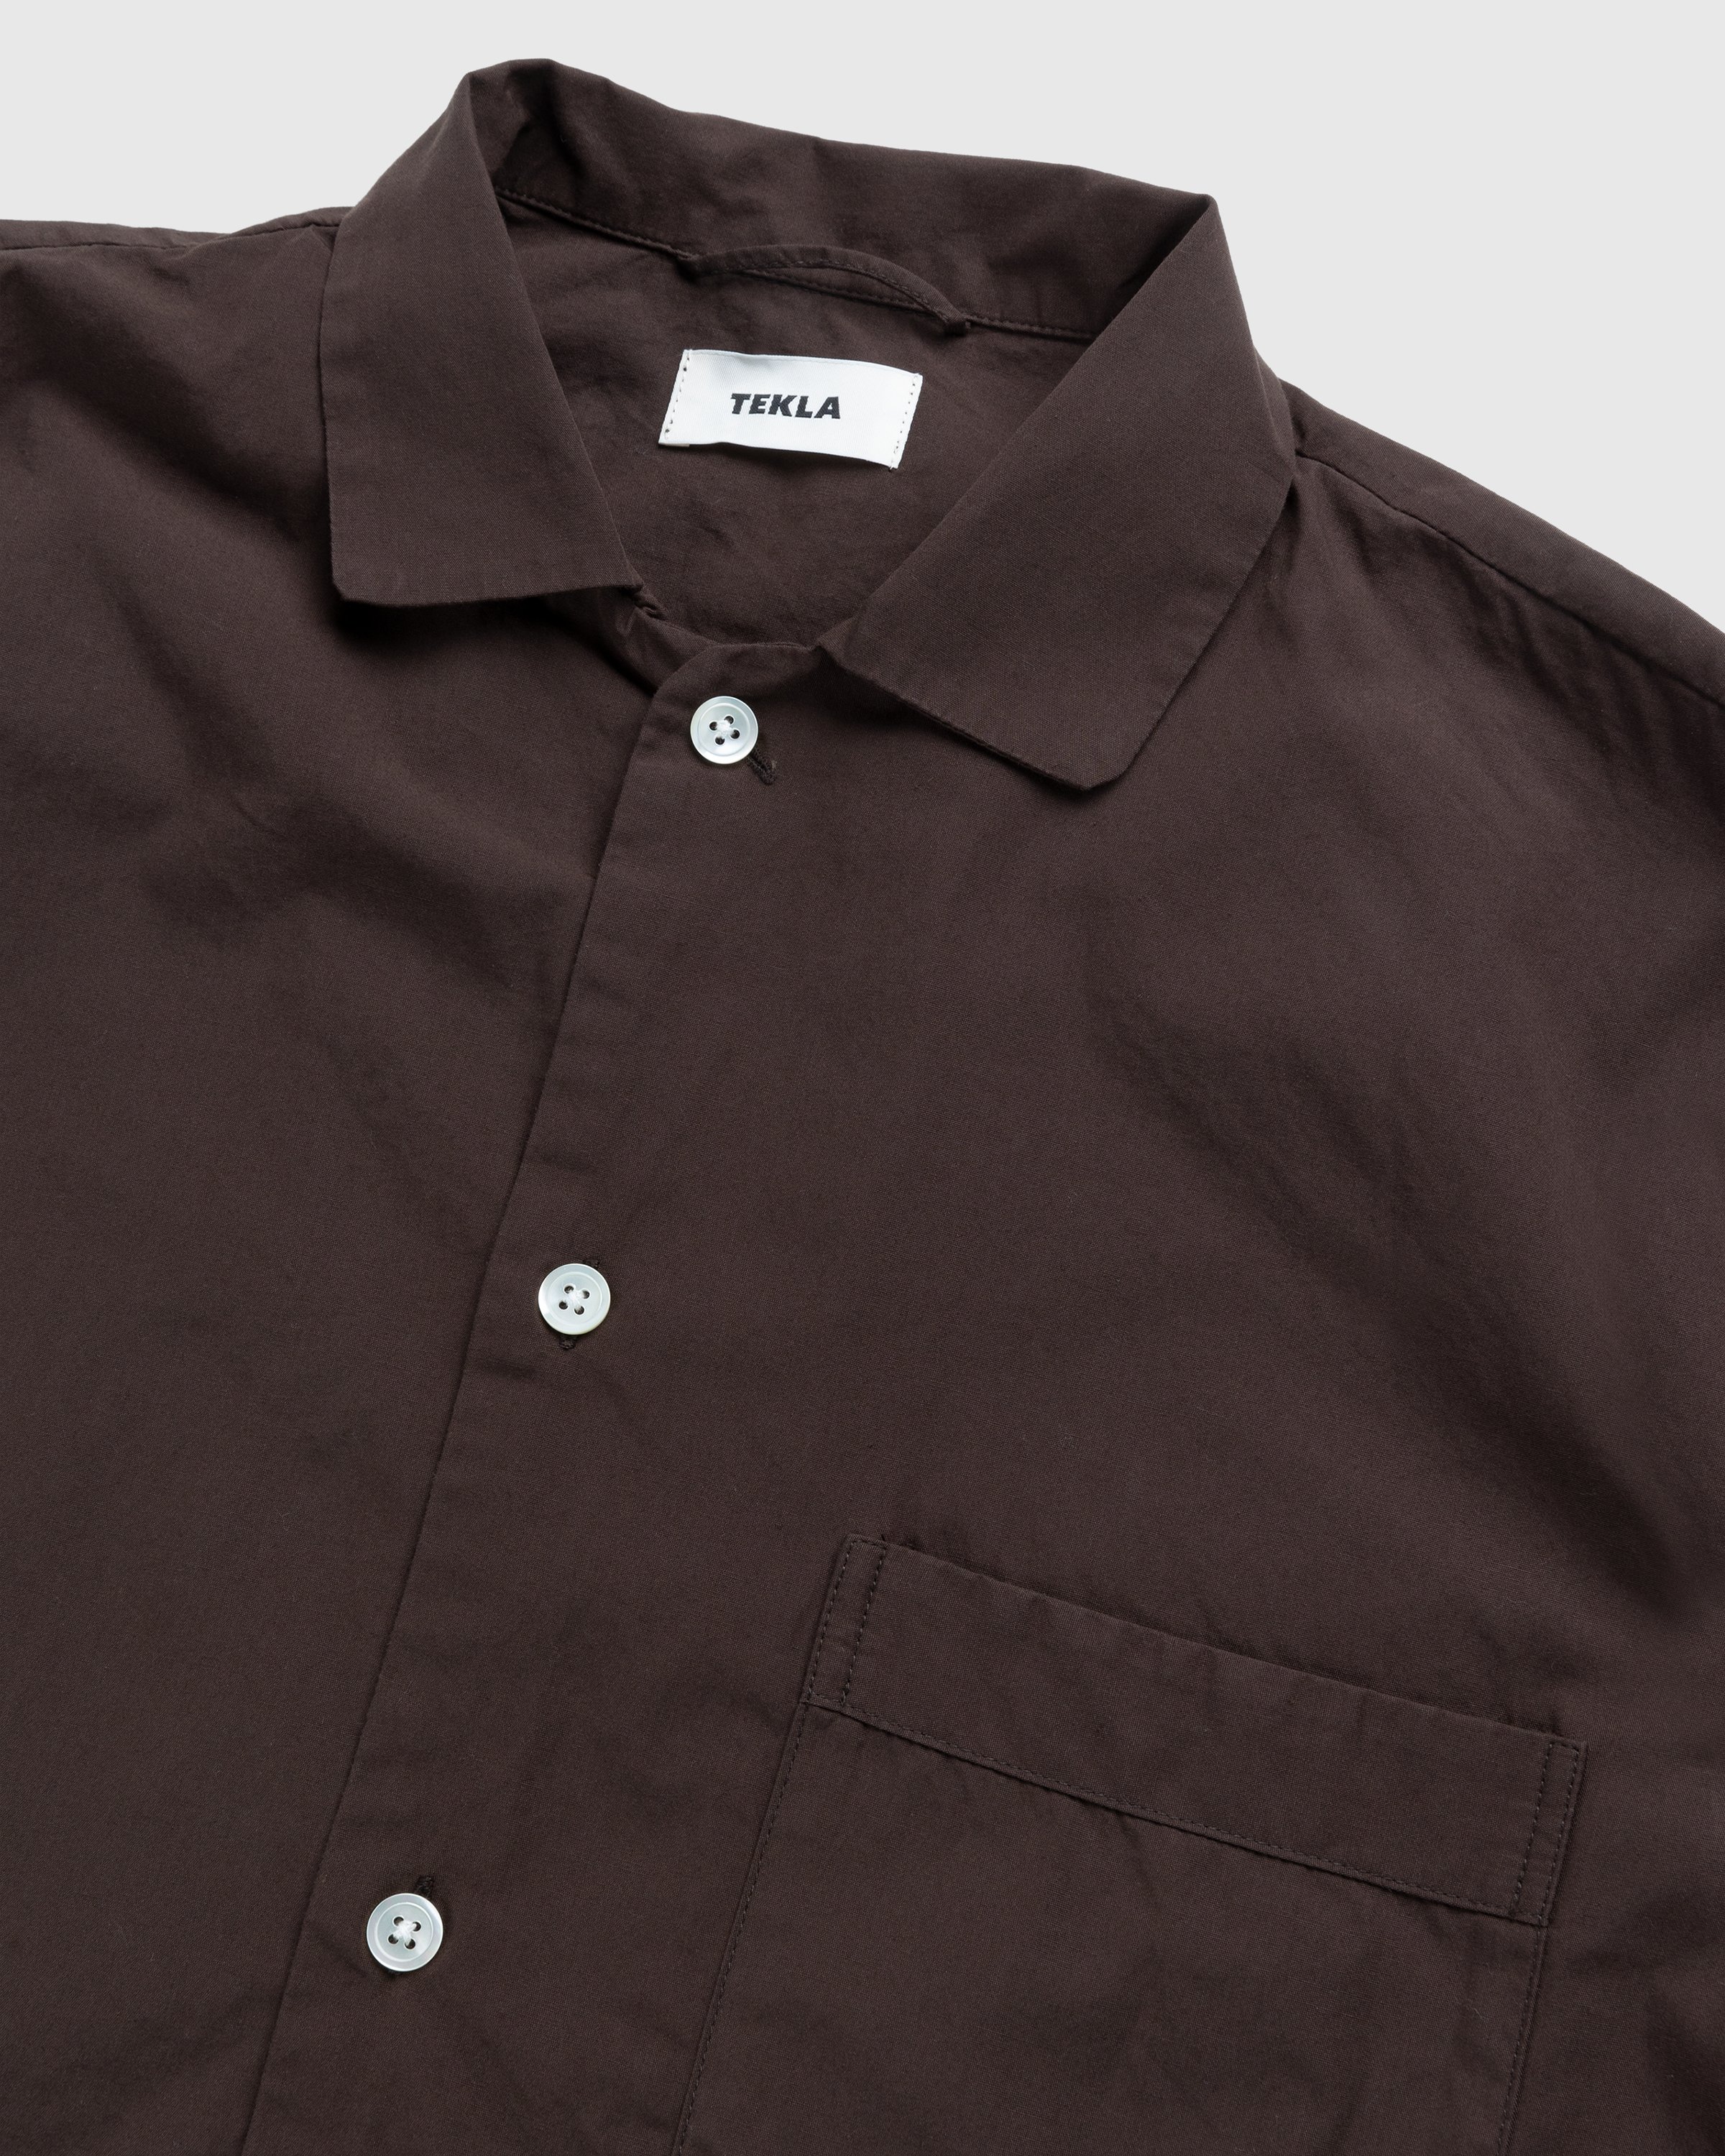 Tekla - Cotton Poplin Pyjamas Shirt Coffee - Clothing - Brown - Image 4